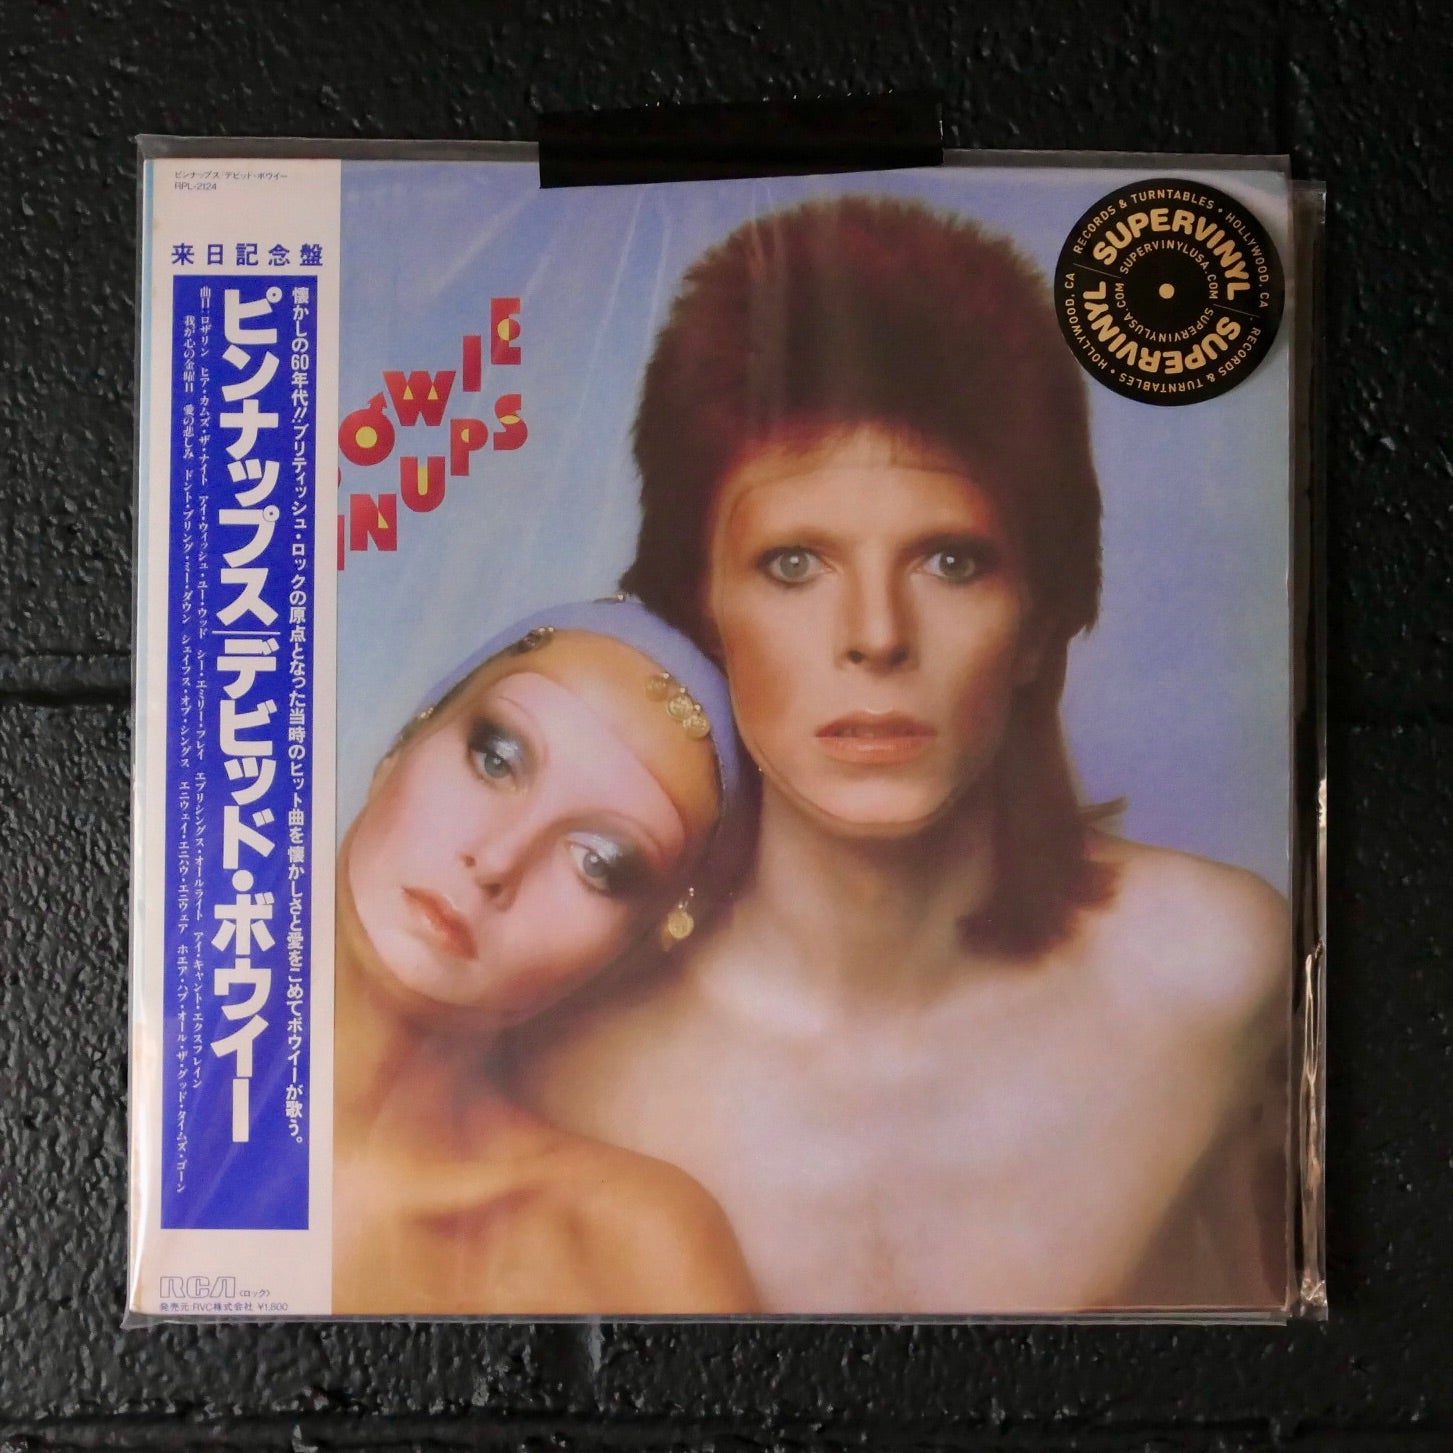 Pin Ups (1983 Japan LP with obi)